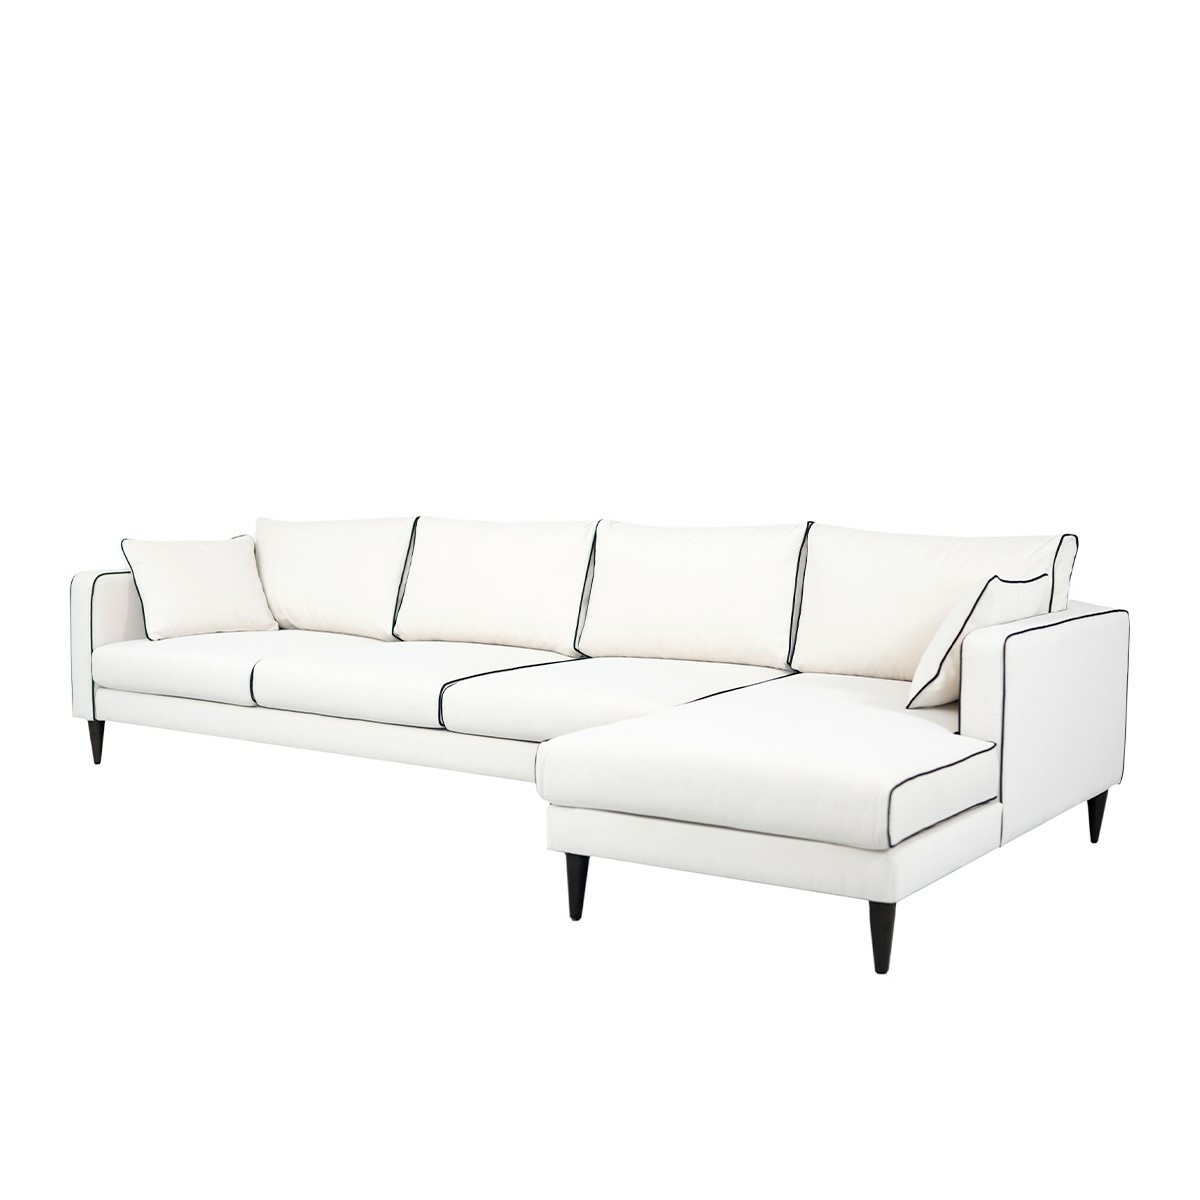 Noa corner sofa - Right angle, L300 x P150 x H75 cm - Cotton - image 2